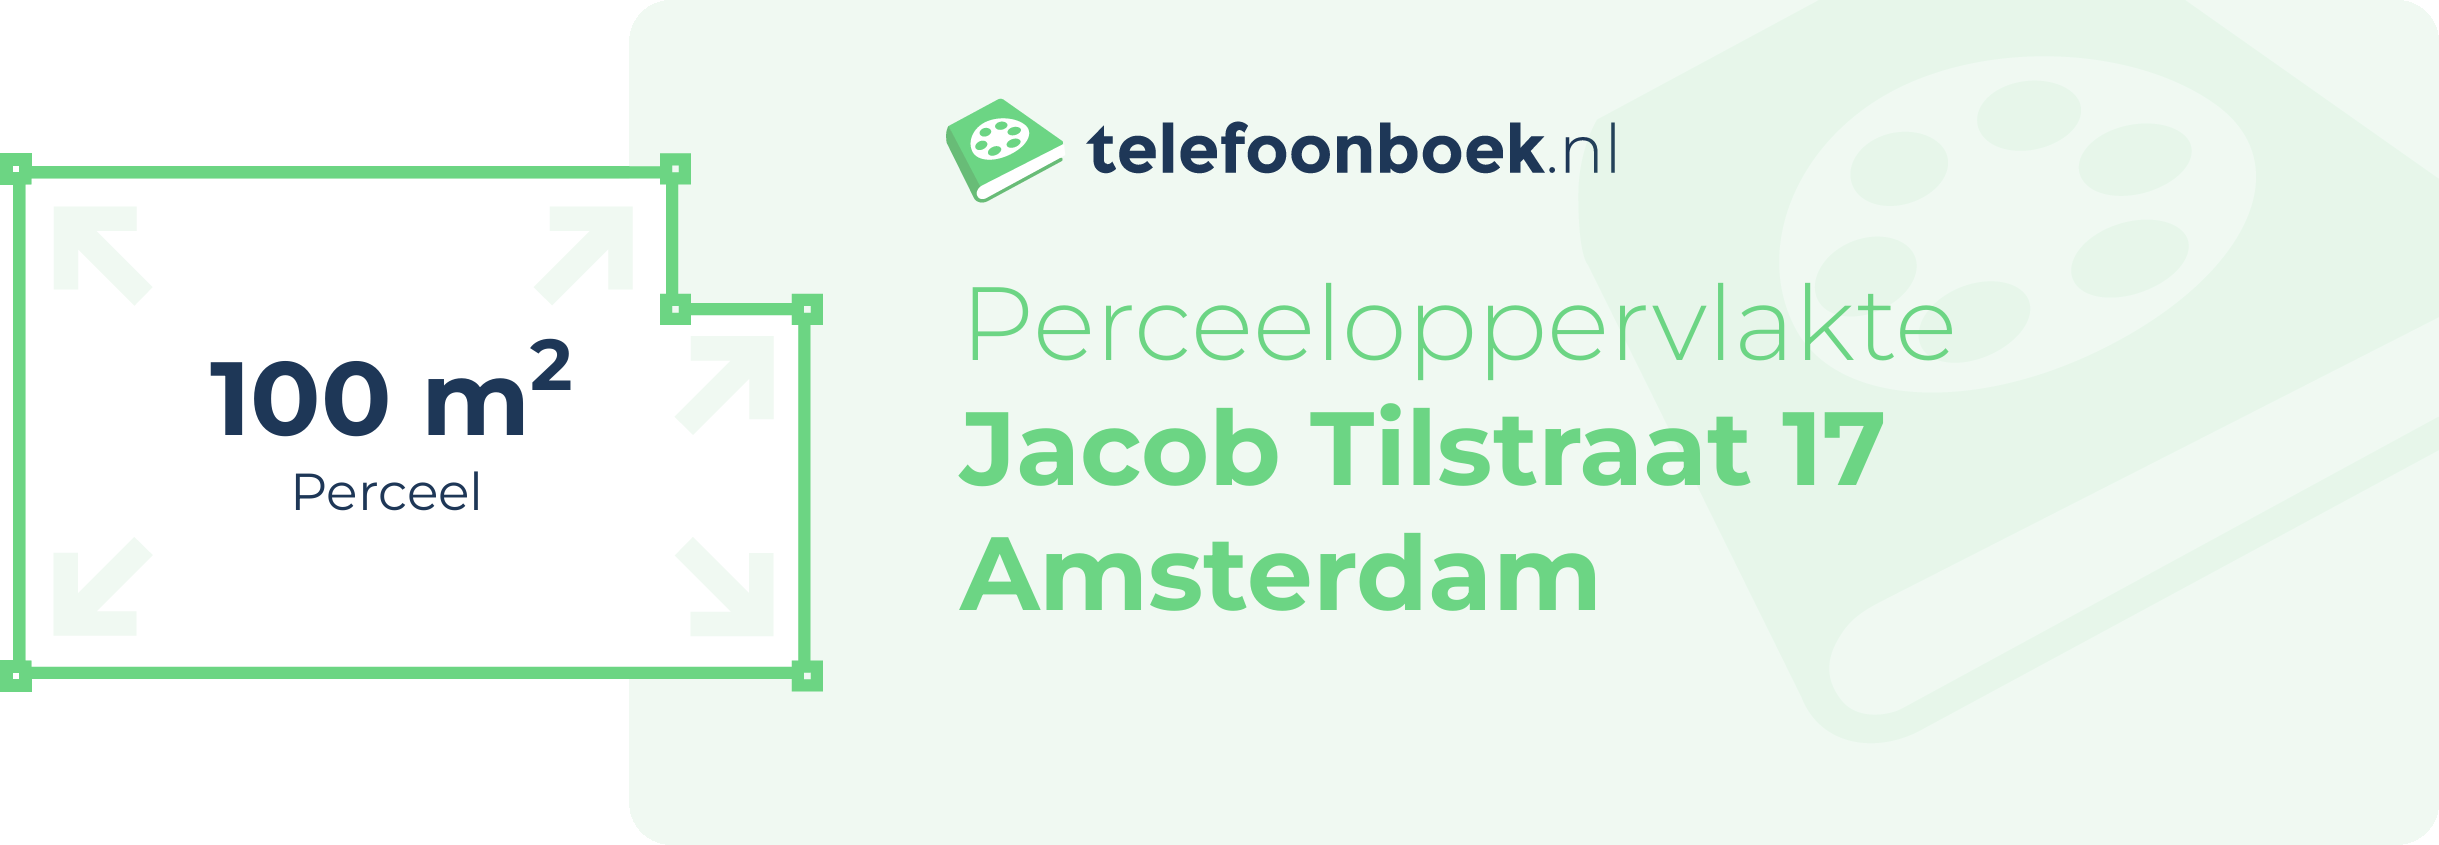 Perceeloppervlakte Jacob Tilstraat 17 Amsterdam